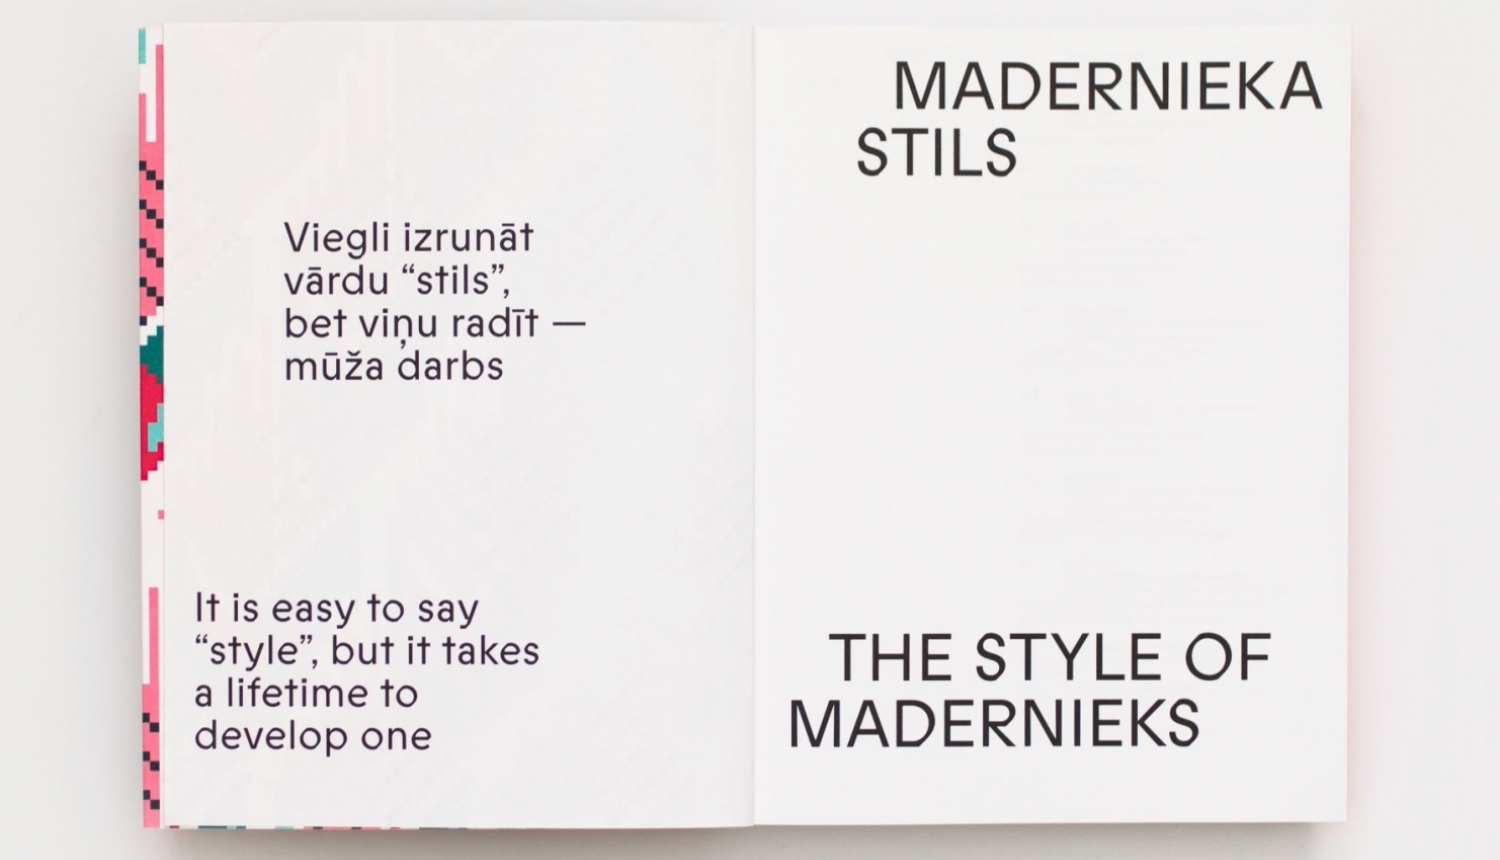 Grāmatas “Madernieka stils” atvērums. Dizains: Mārtiņš Ratniks. 2021. Foto: Kristiāna Zelča